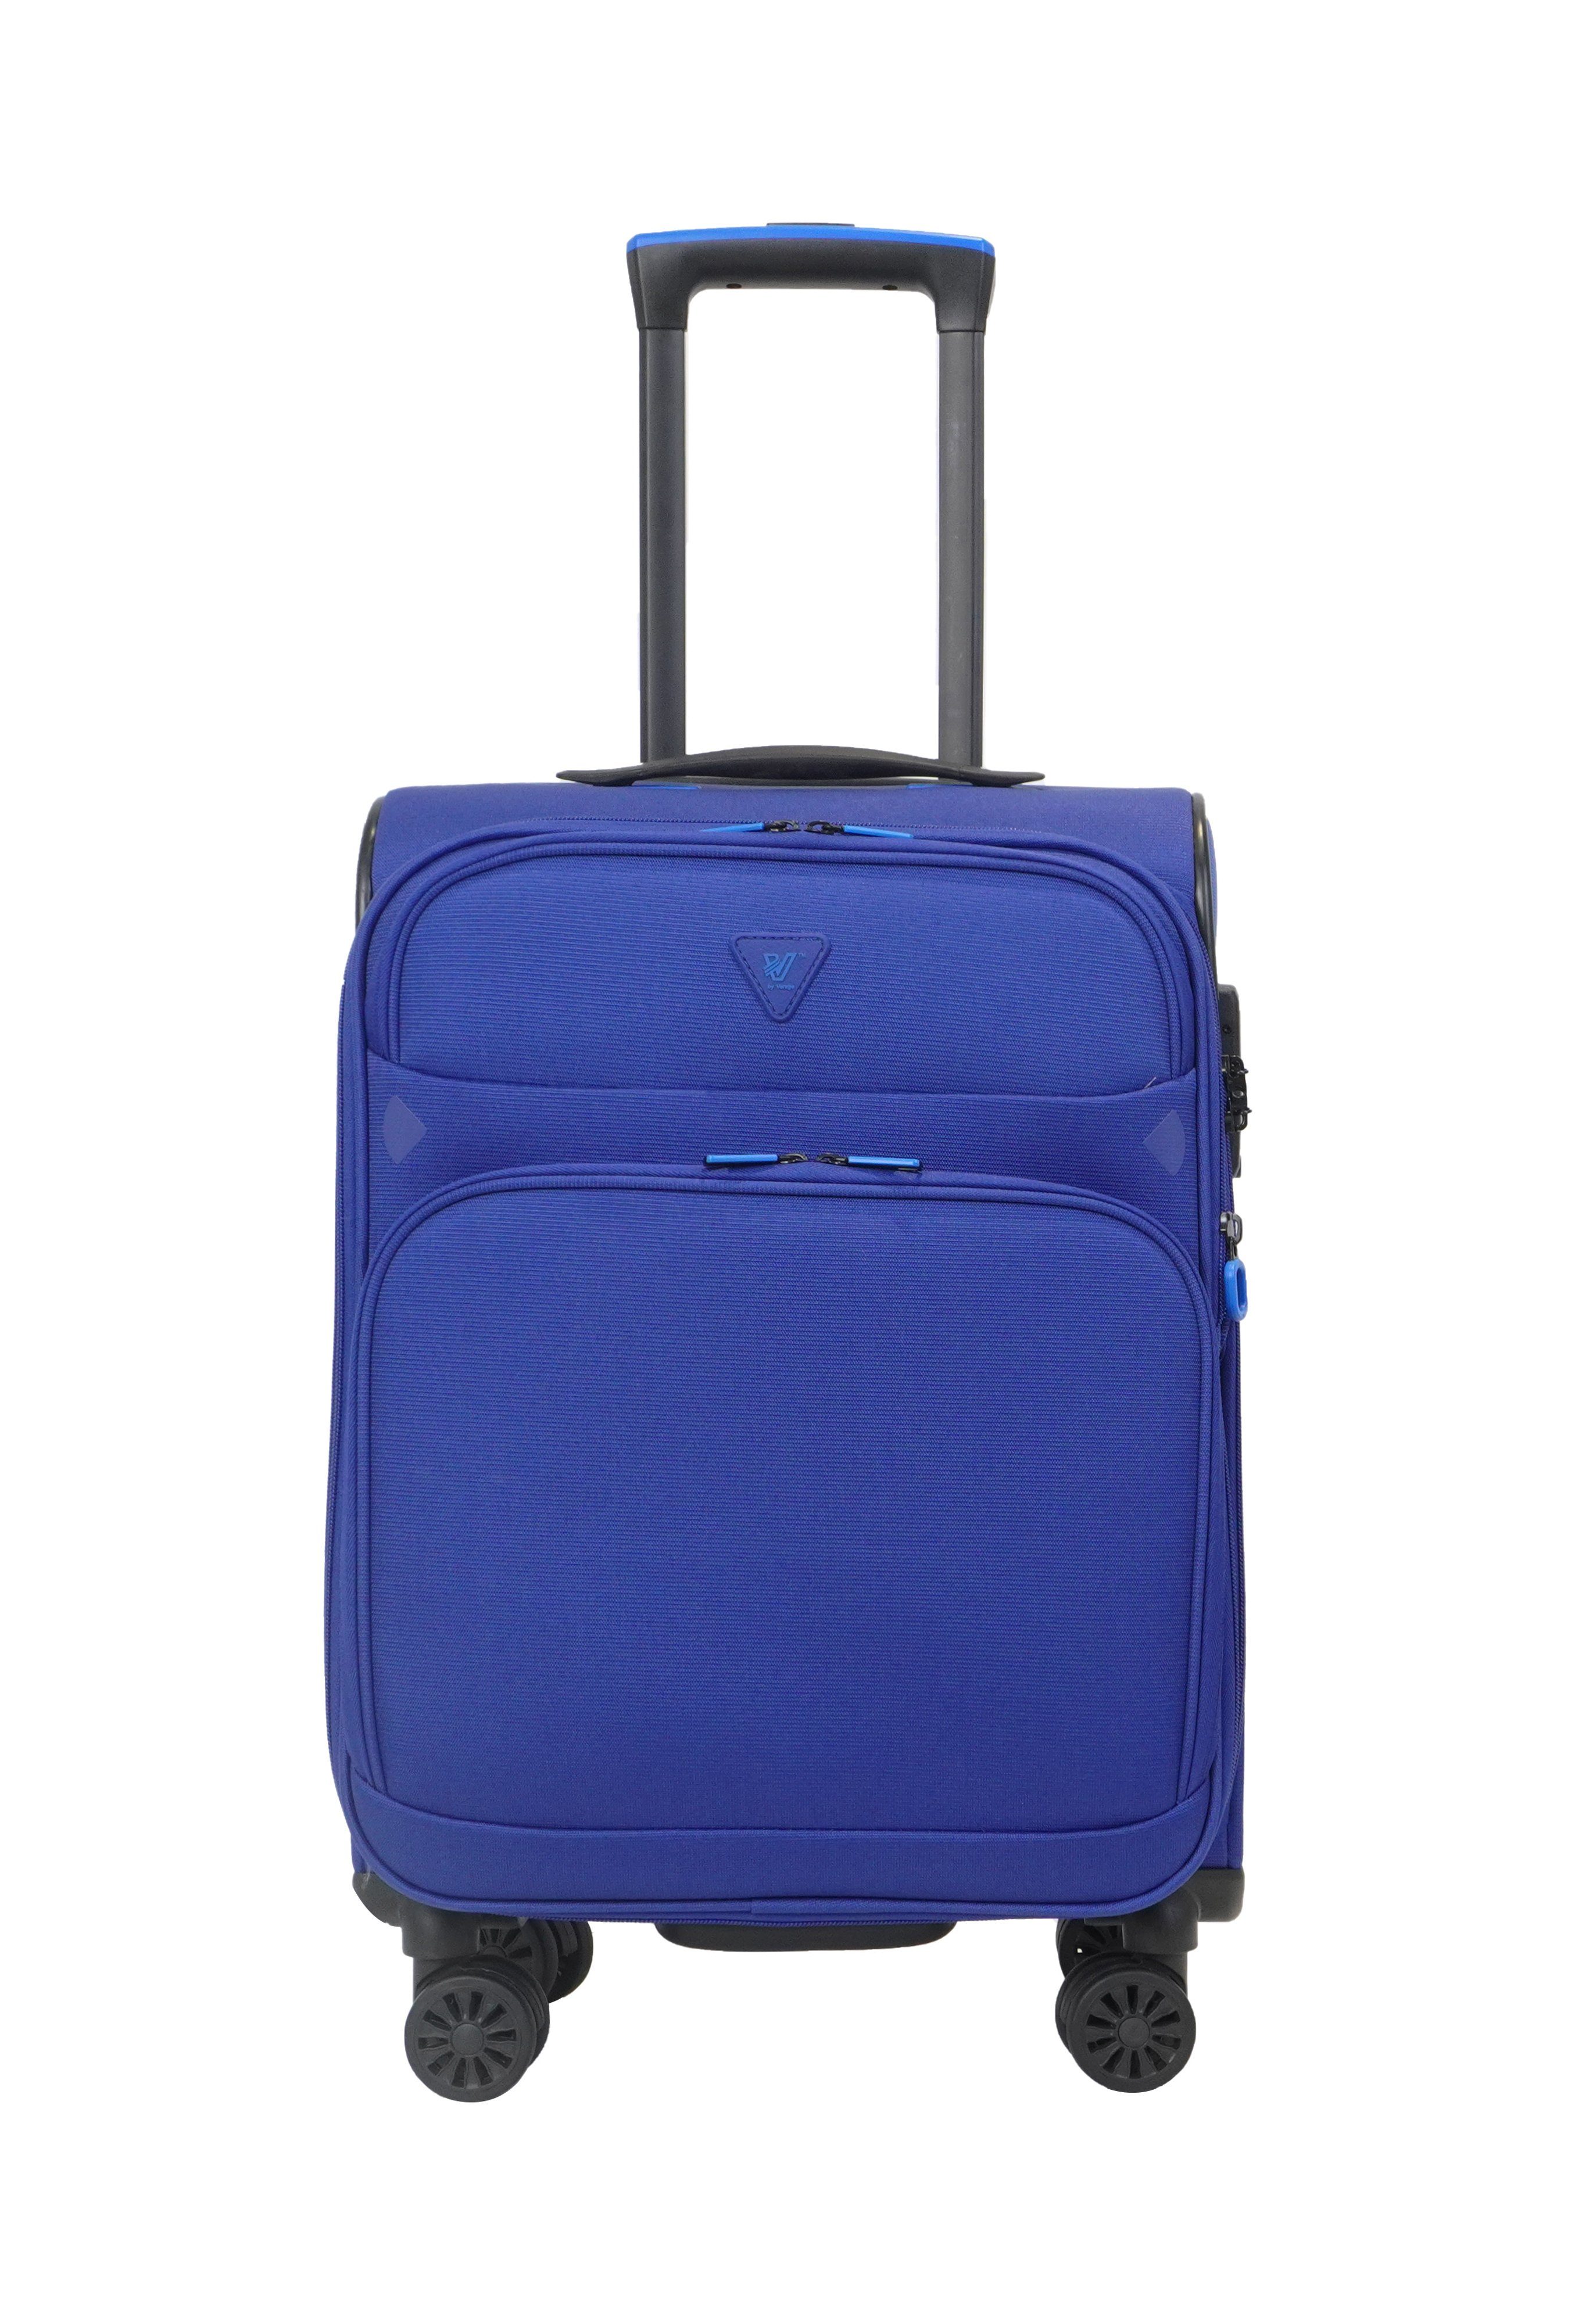 Verage Weichgepäck-Trolley Breeze, 4 Reisekoffer, Rollen, Blau-Violet TSA-Zahlenschloss, erweiterbar, schwarz